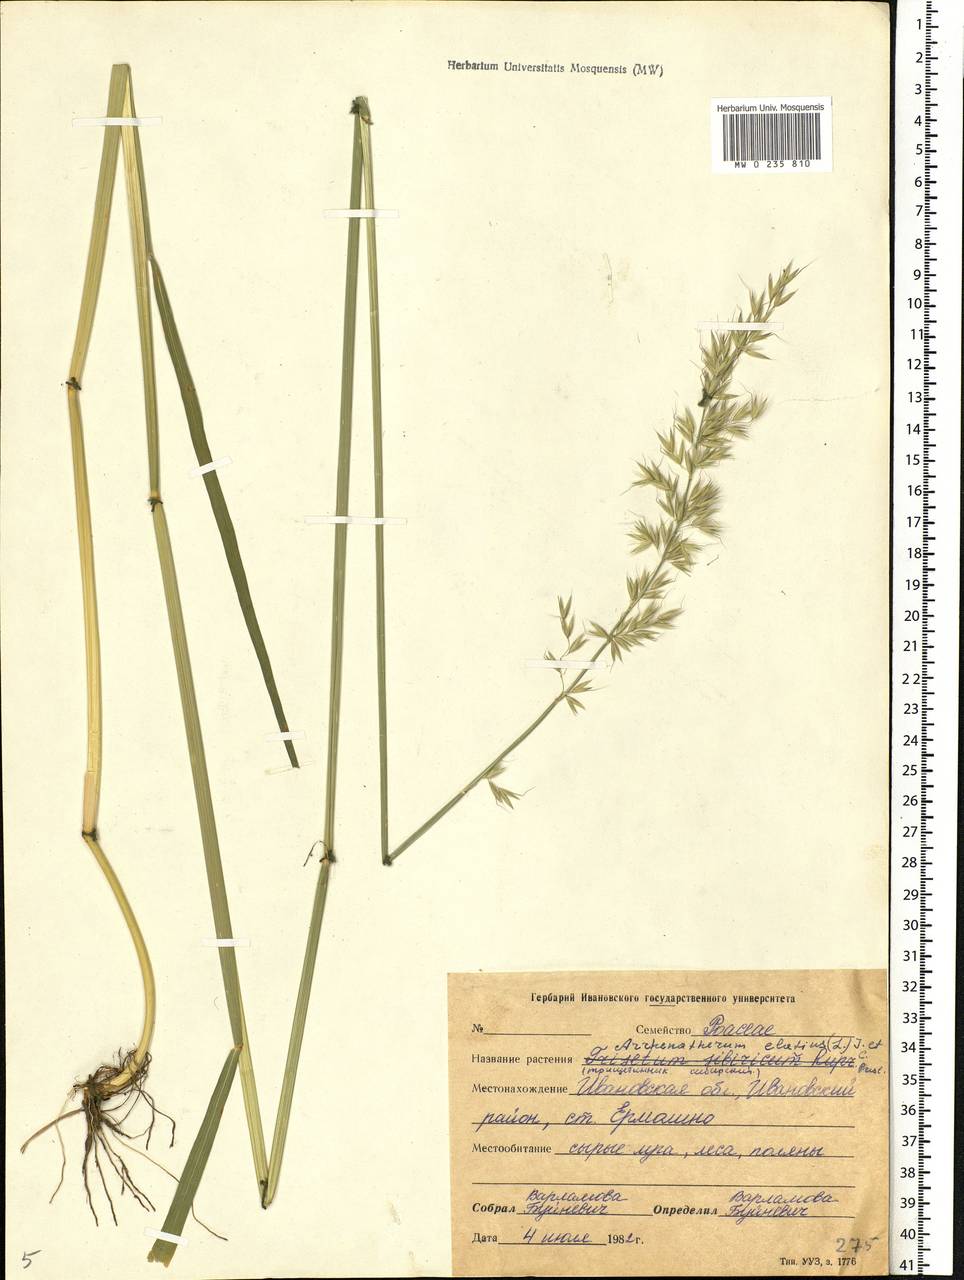 Arrhenatherum elatius (L.) P.Beauv. ex J.Presl & C.Presl., Eastern Europe, Central forest region (E5) (Russia)